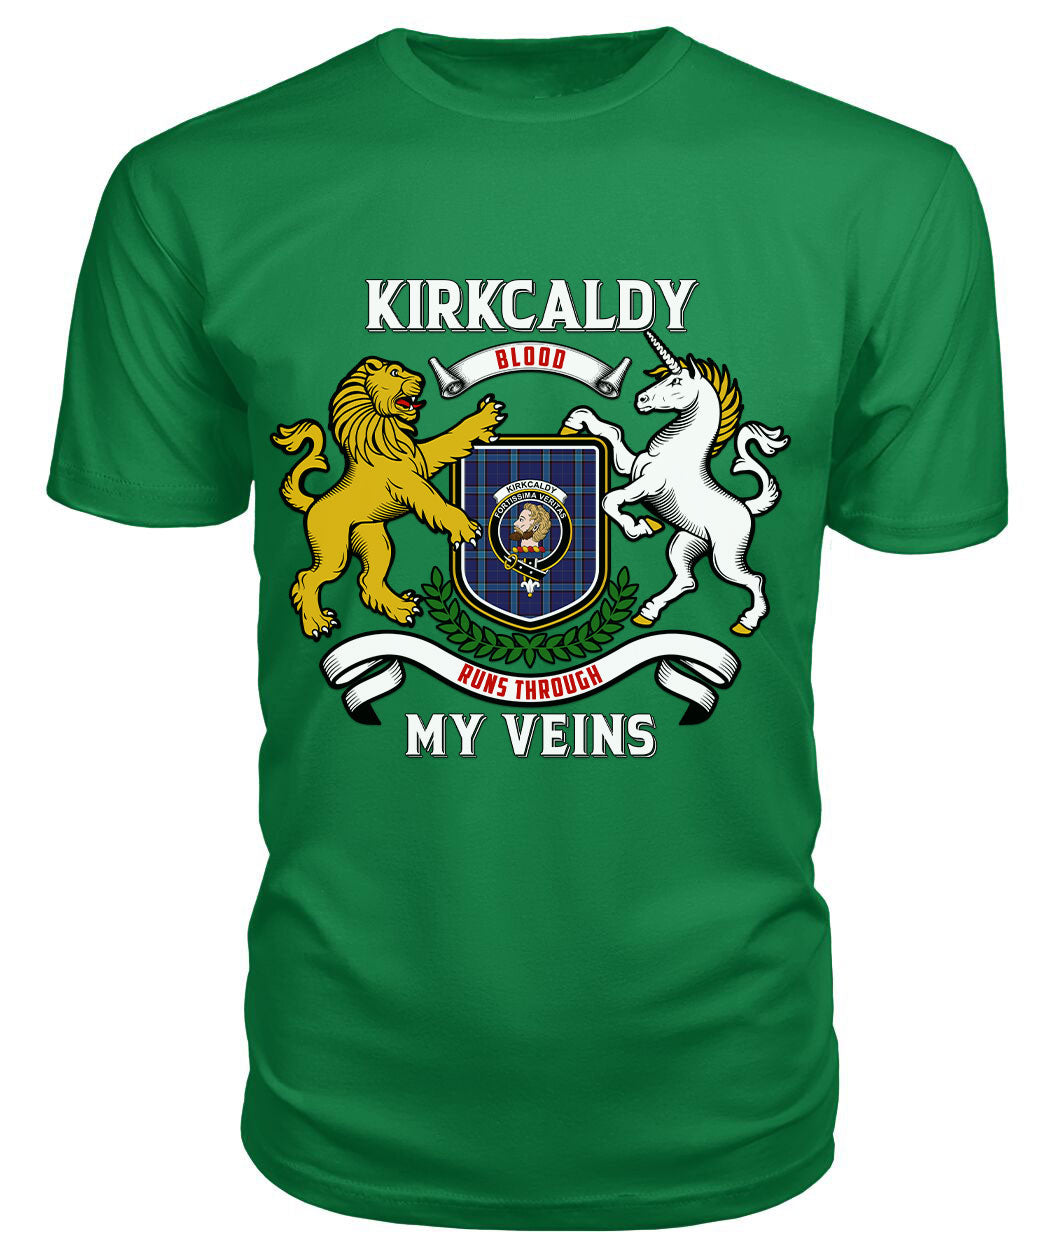 Kirkcaldy Tartan Crest 2D T-shirt - Blood Runs Through My Veins Style